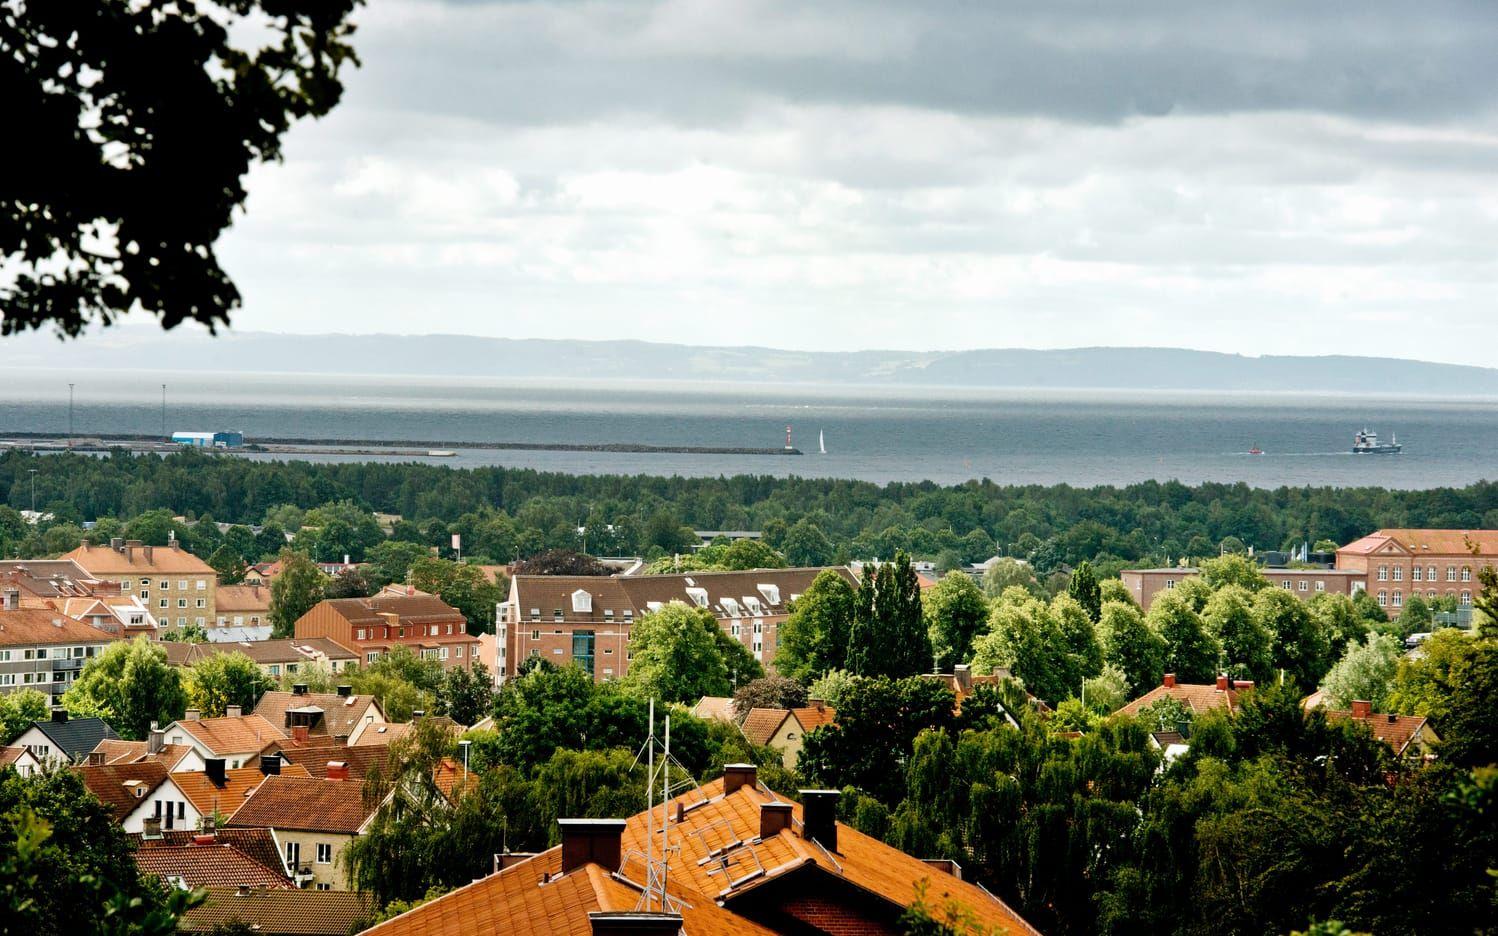 ”Utsikten ut över staden och Kattegatt ger en härlig känsla av frihet…”. Bild: HP:s arkiv